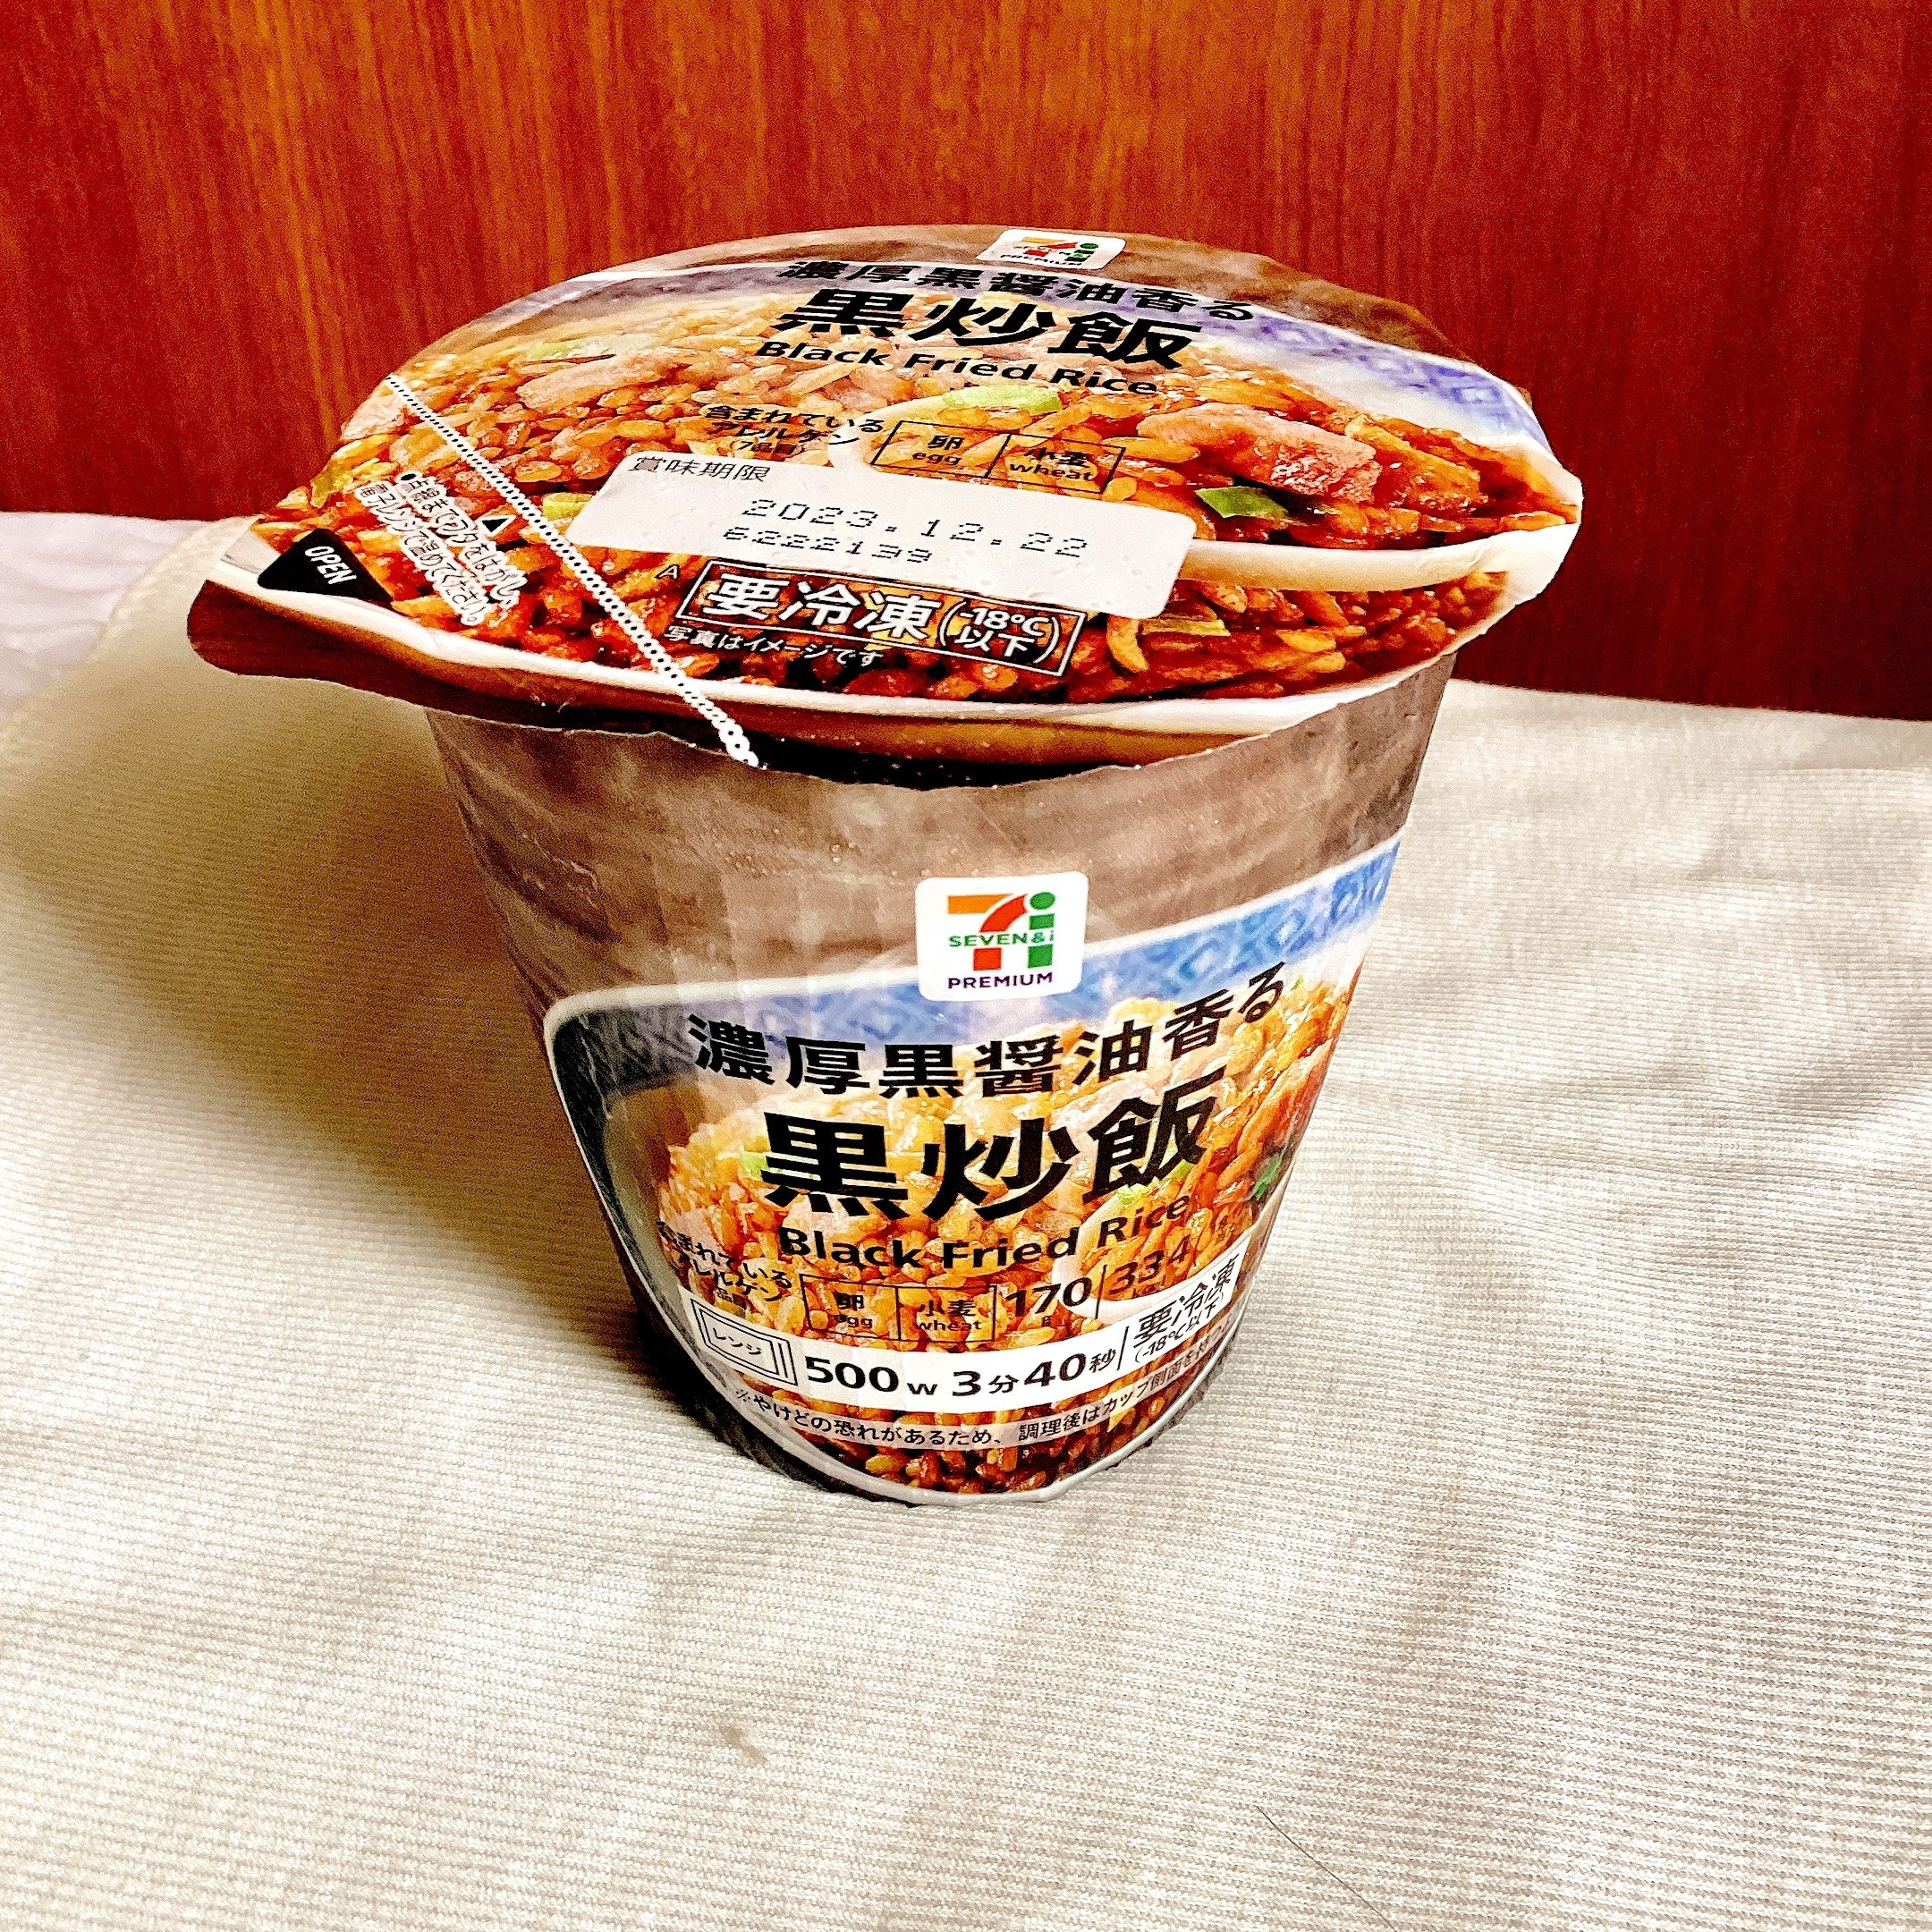 セブンのオススメの冷凍食品「黒炒飯」